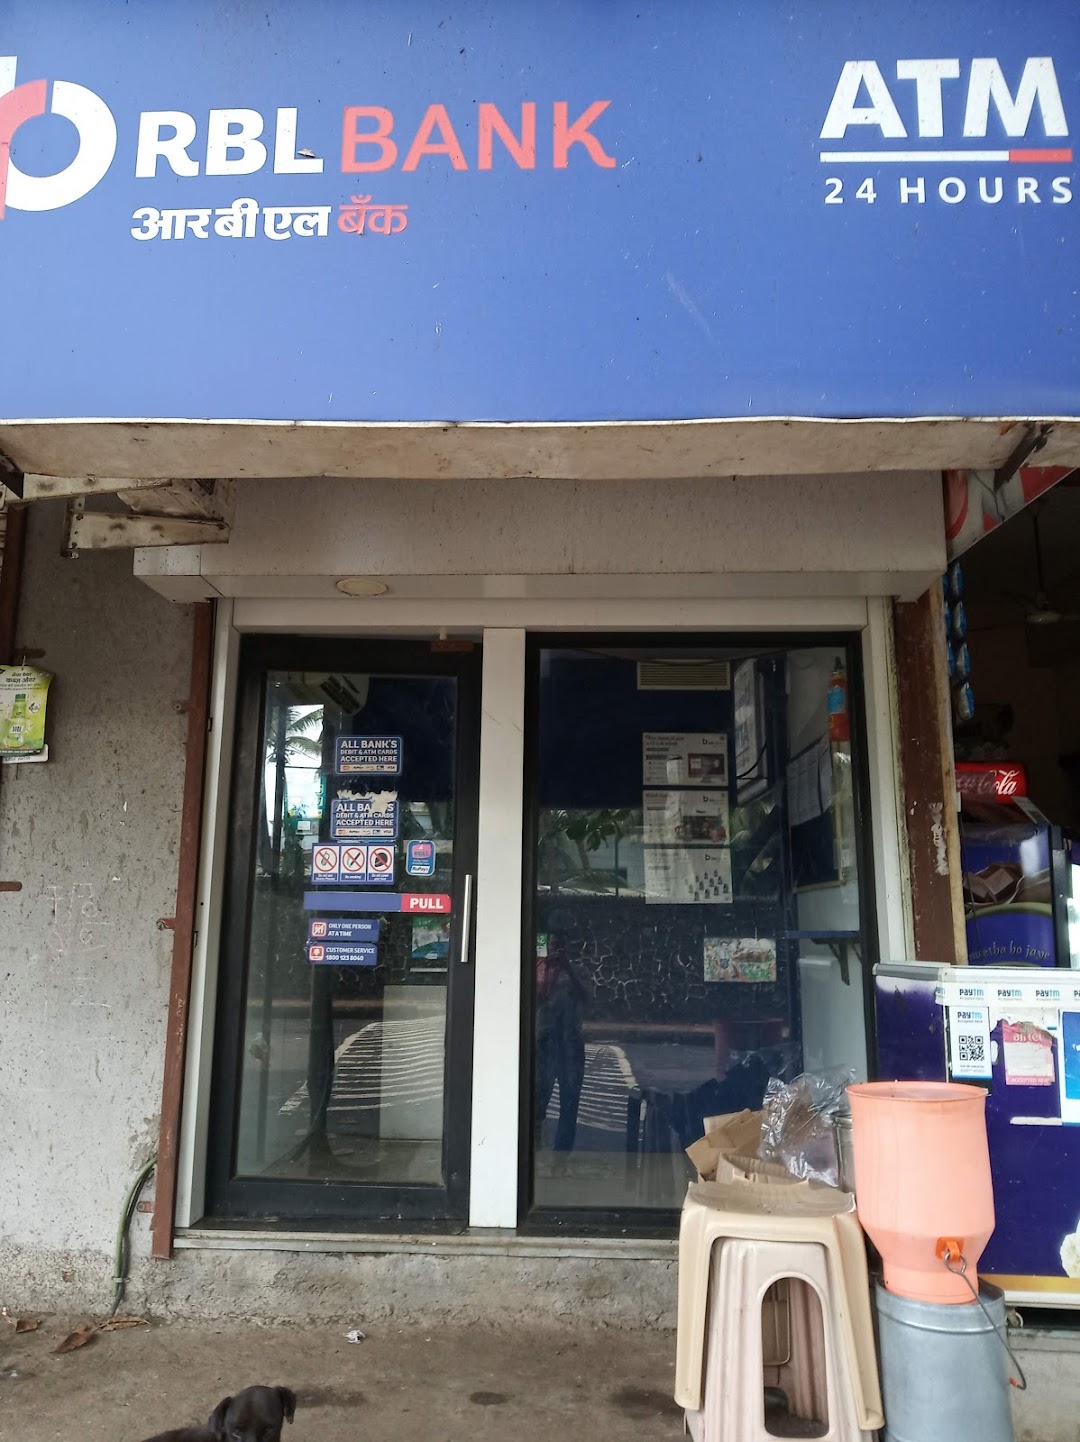 RBL Bank ATM - RTO Kalyan